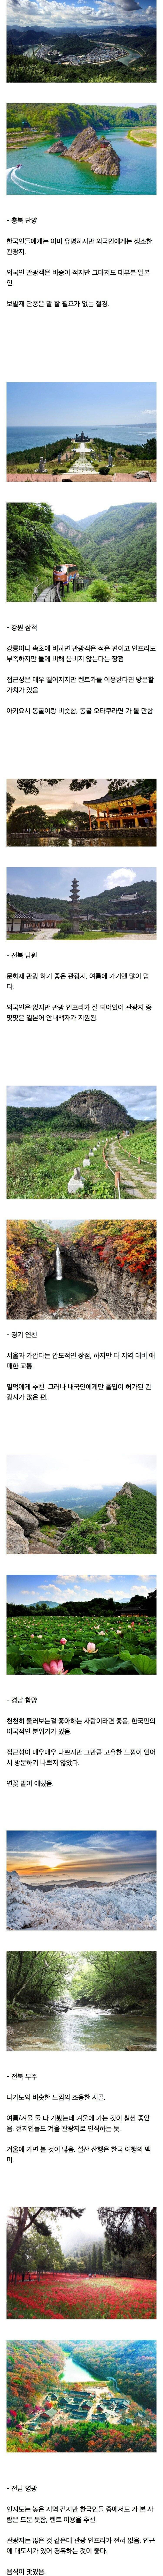 일본 야후에서 뽑은 안 유명하지만 좋은 한국 관광지.jpg